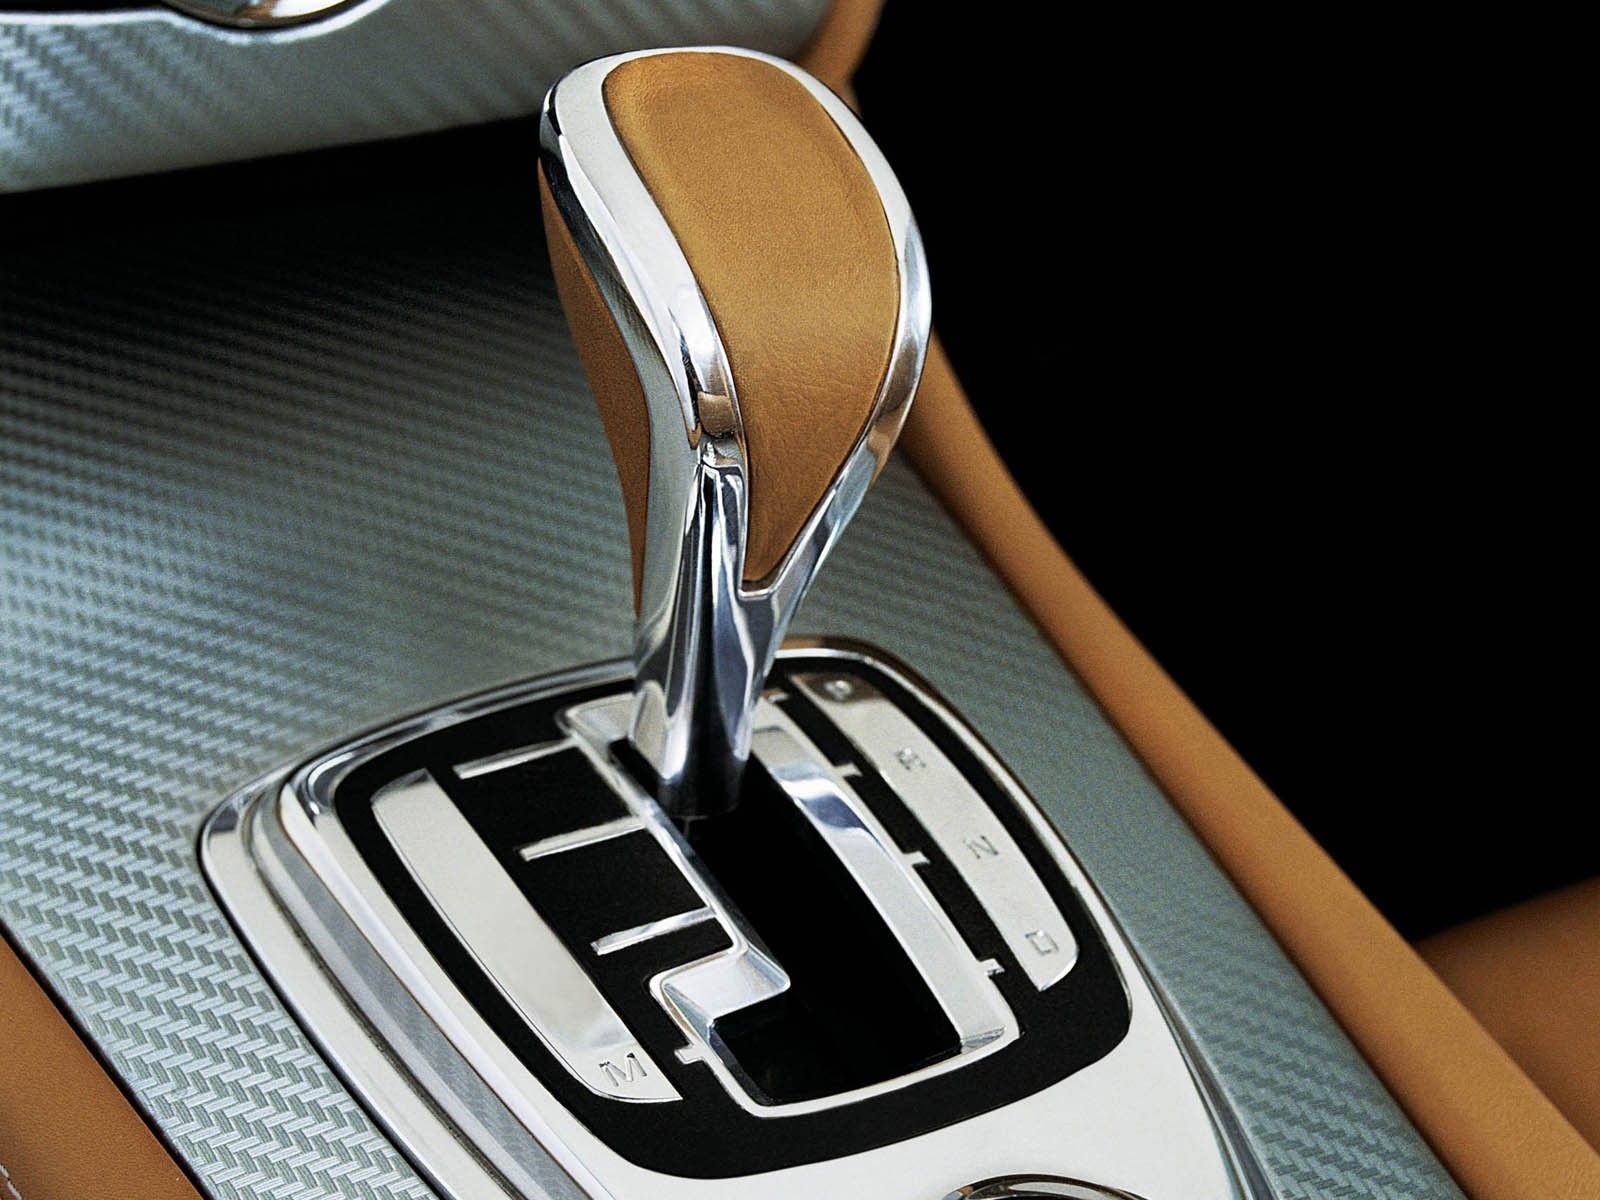 2005 Jaguar Advanced Lightweight Coupe Concept